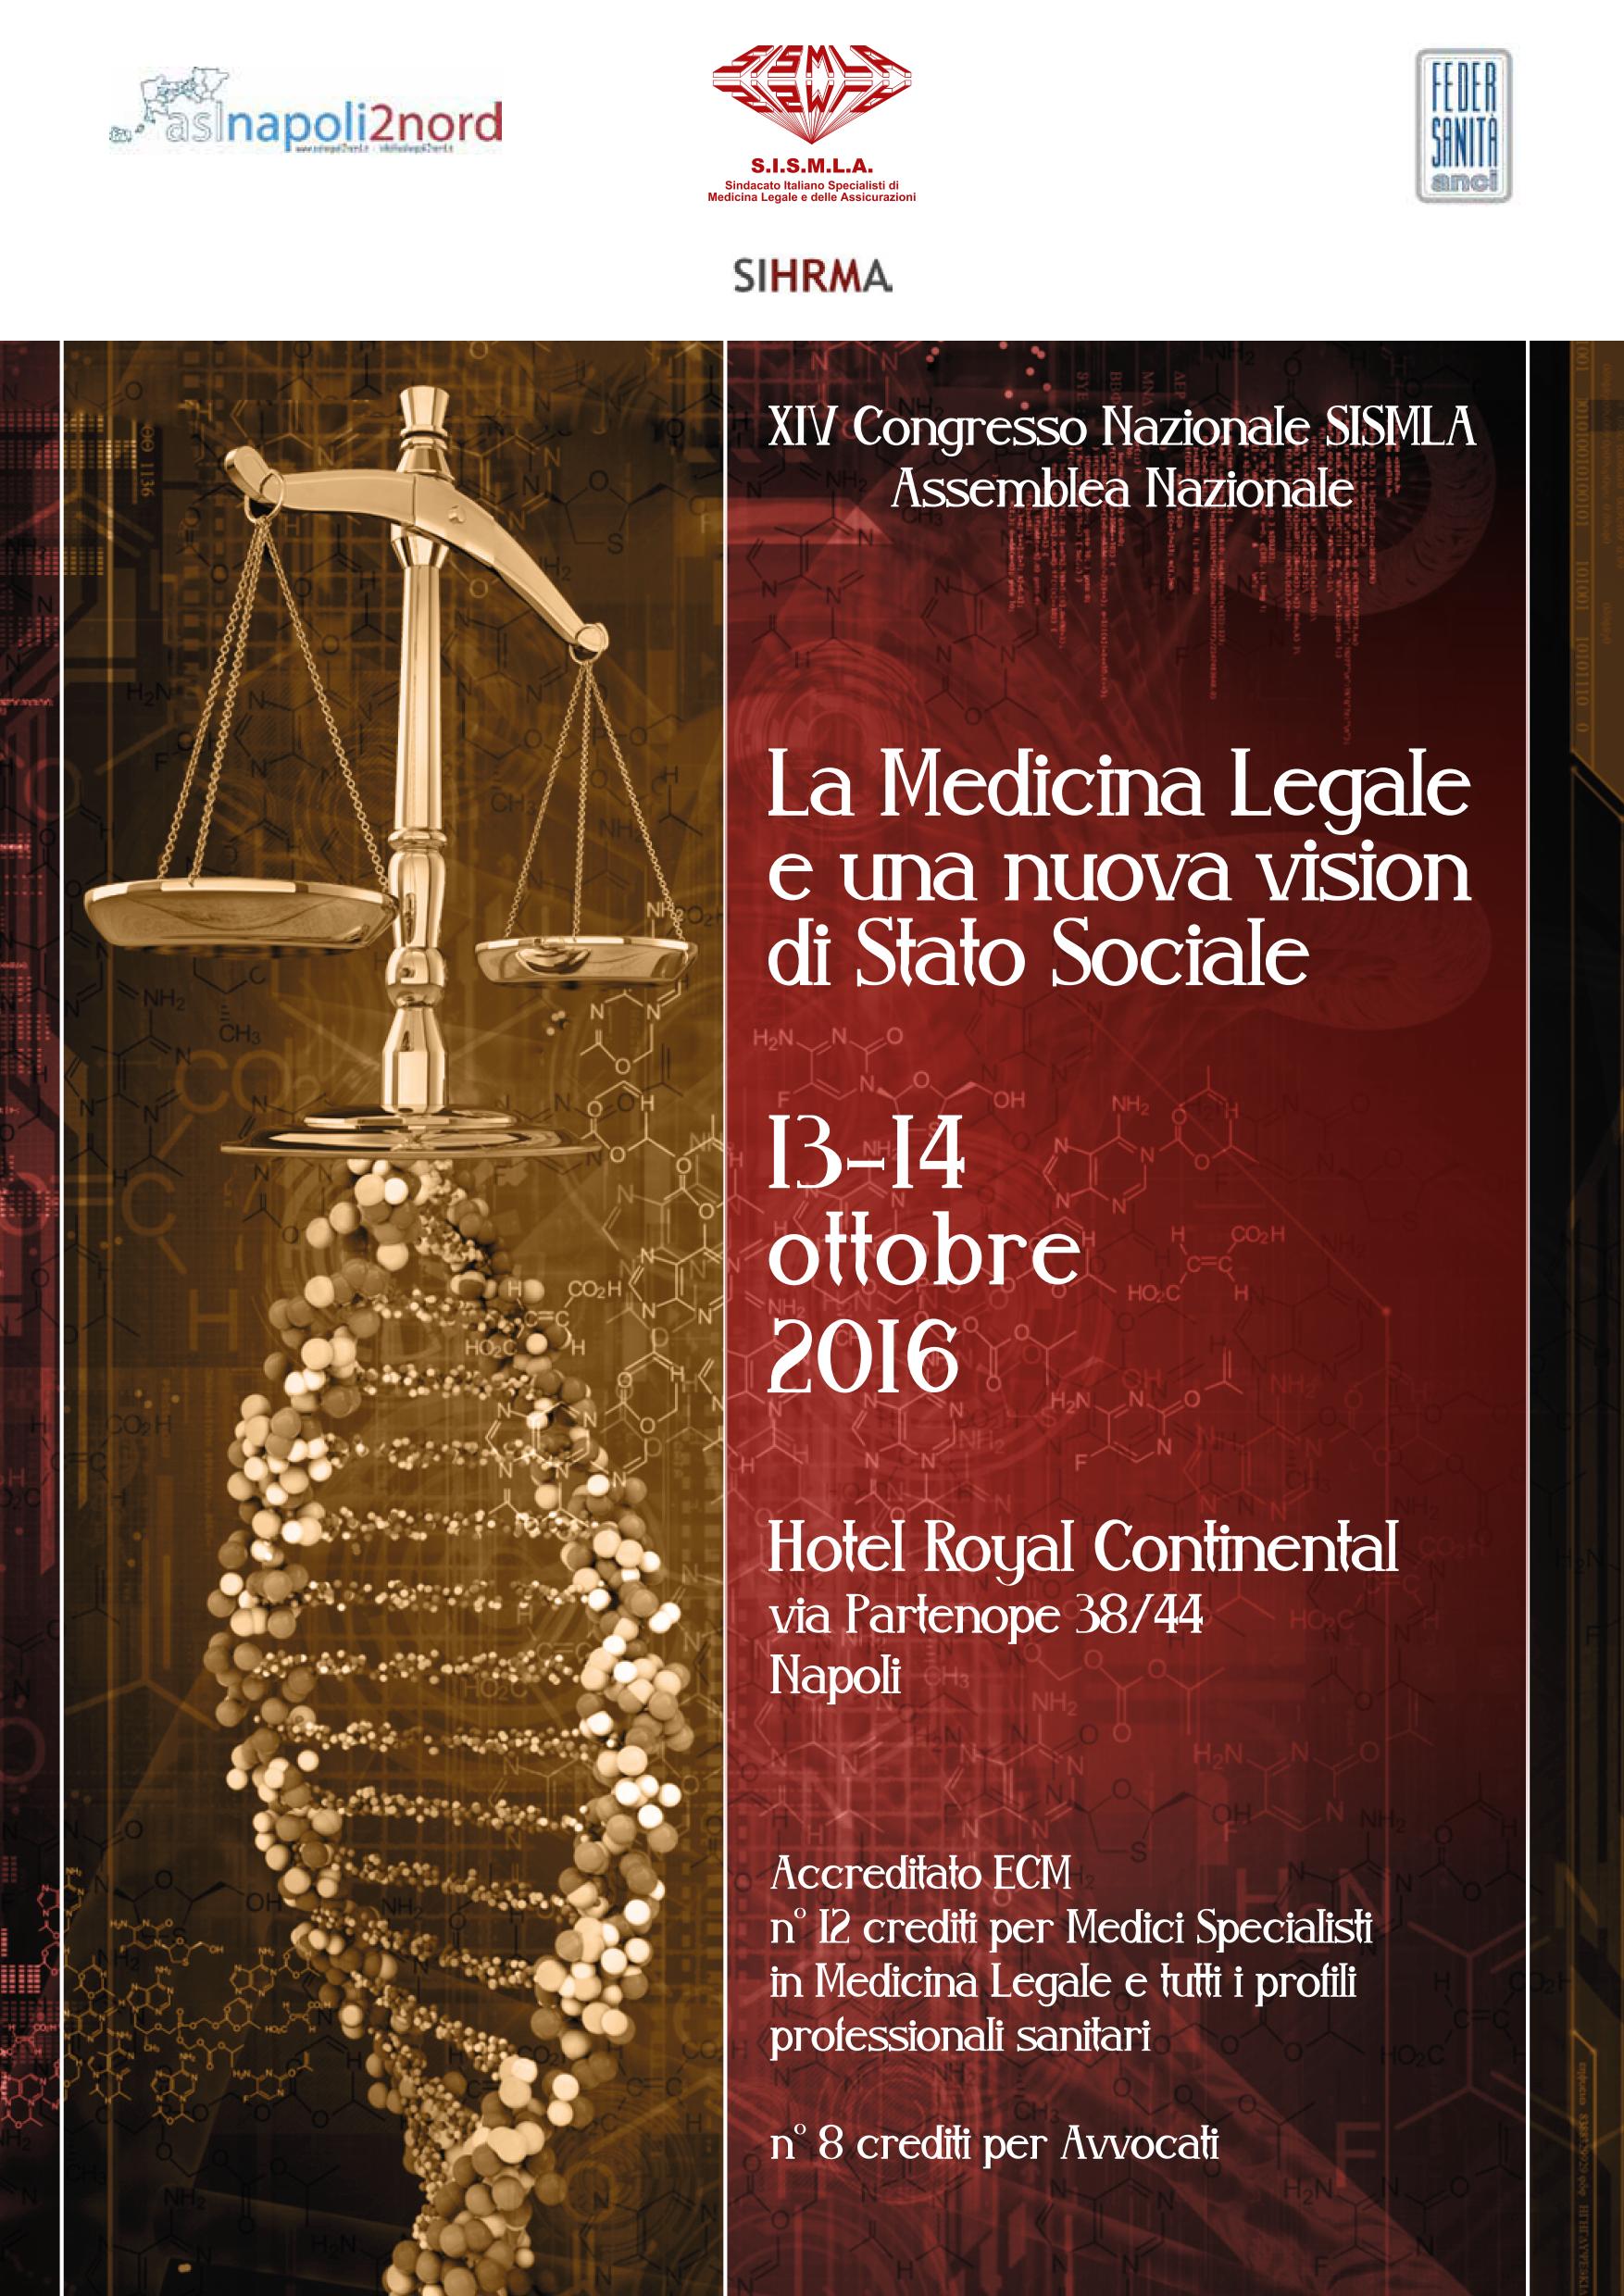  XIV° Congresso Nazionale SISMLA: La Medicina Legale e una nuova vision di Stato Sociale